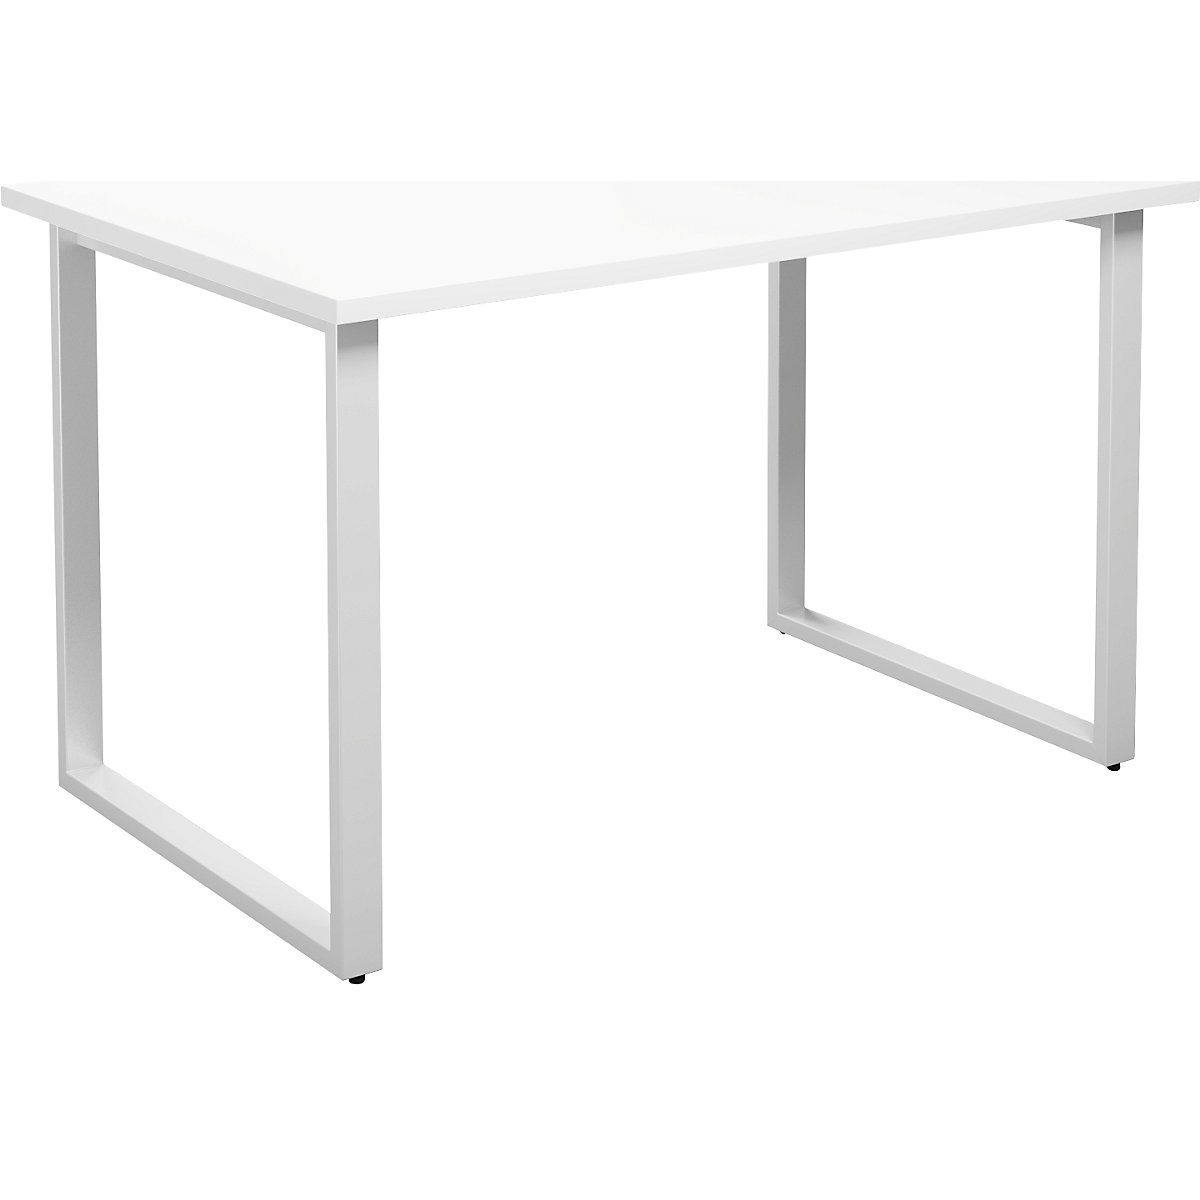 DUO-O multi-purpose desk, straight tabletop, WxD 1200 x 800 mm, white, white-2